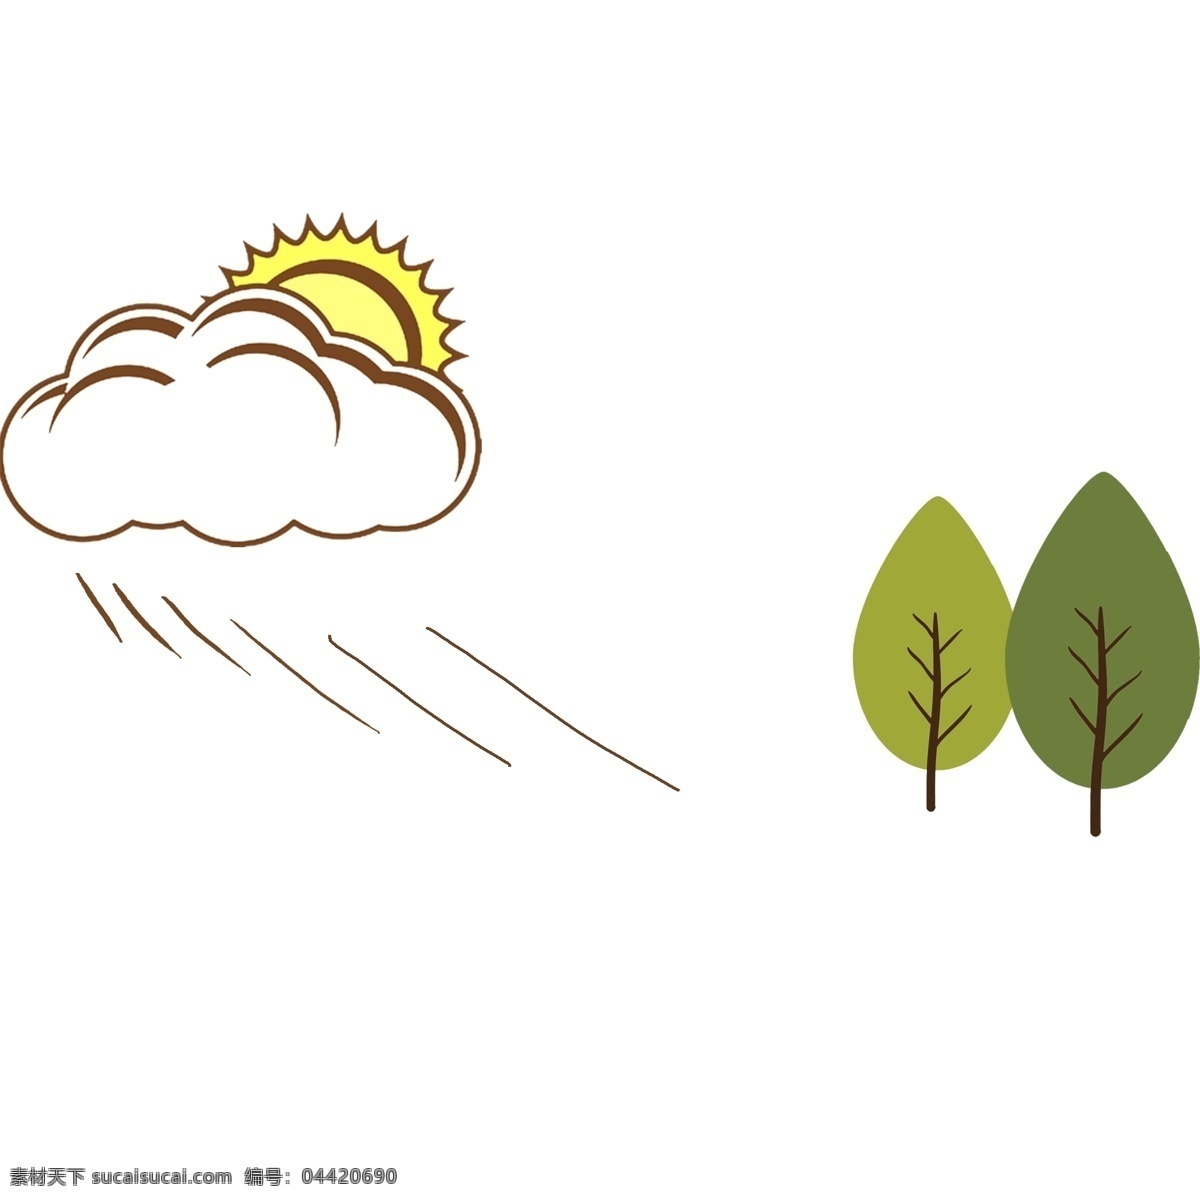 分割线 太阳 小树 插画 绿色的小树 卡通插画 手绘插画 分割线插画 太阳分割线 火红的太阳 漂亮的小树